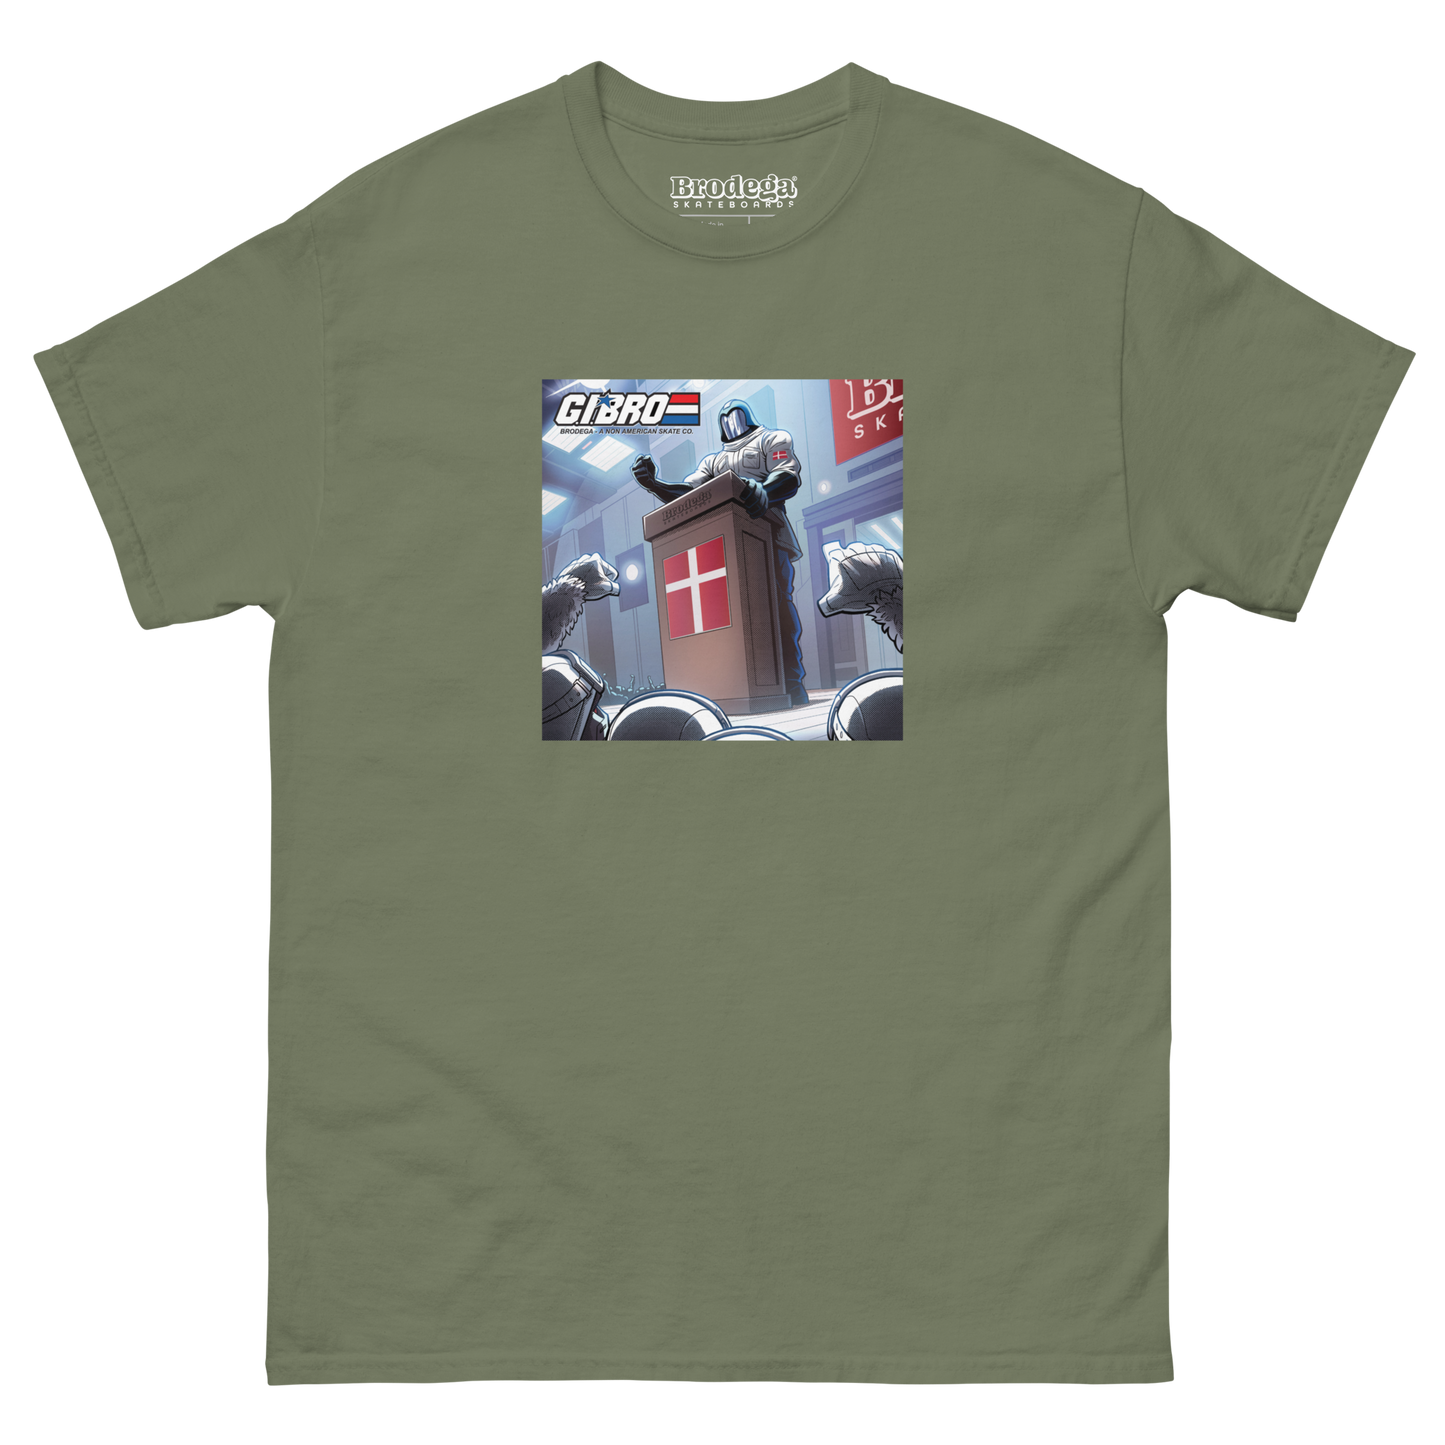 Skatriotisme / T-shirt